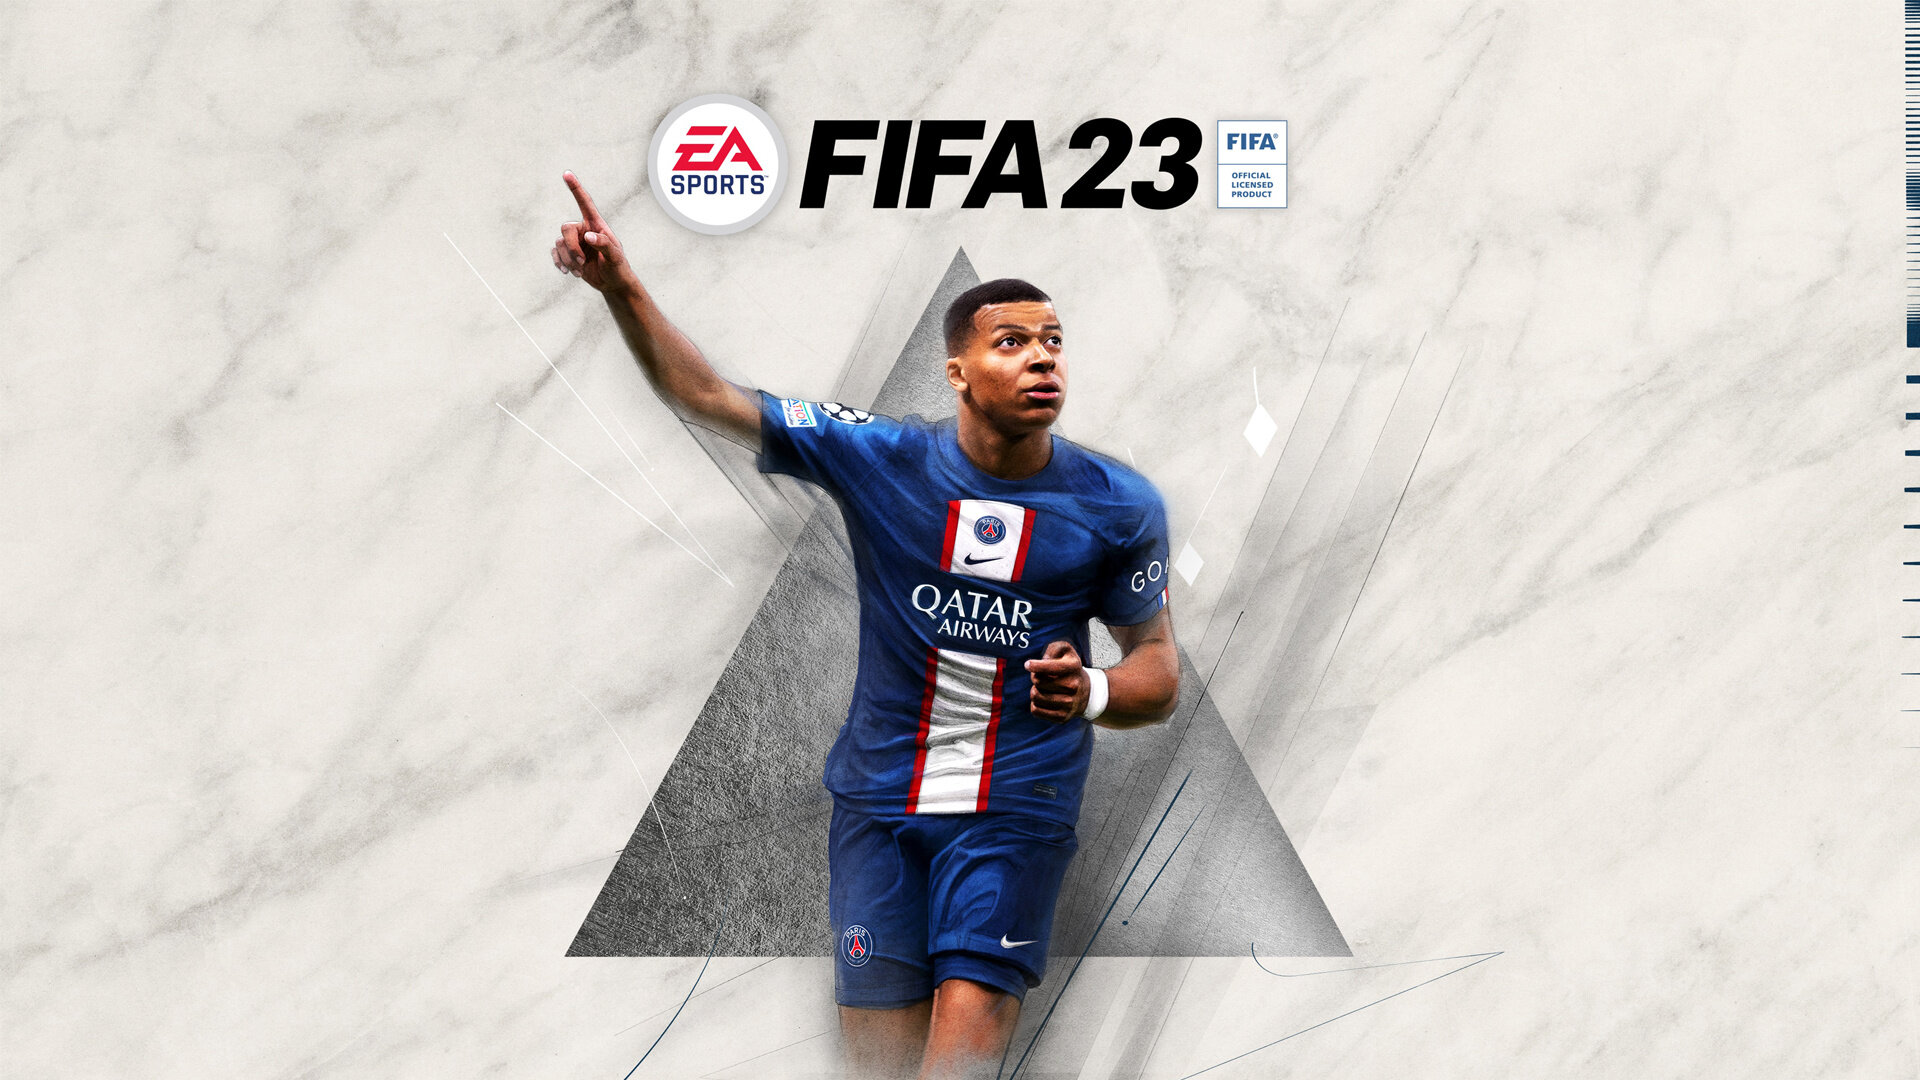 Pořiďte si Xbox Series S a získejte k němu FIFA 23 zdarma